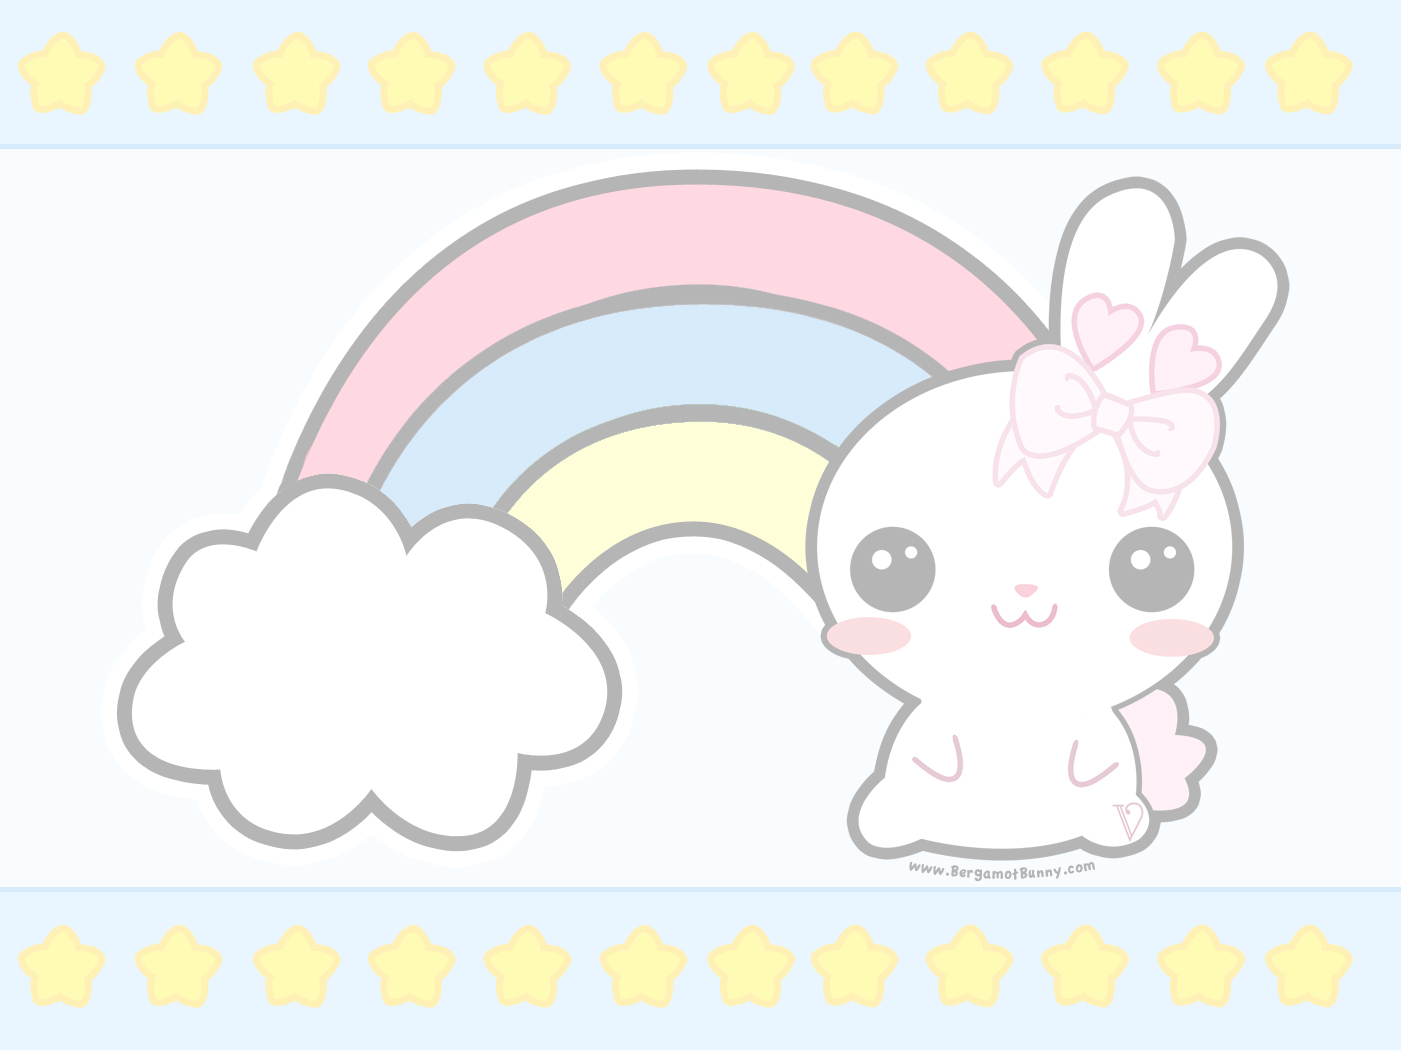 Cute Rainbow Themed Desktop Wallpaper D Bergamot Bunny